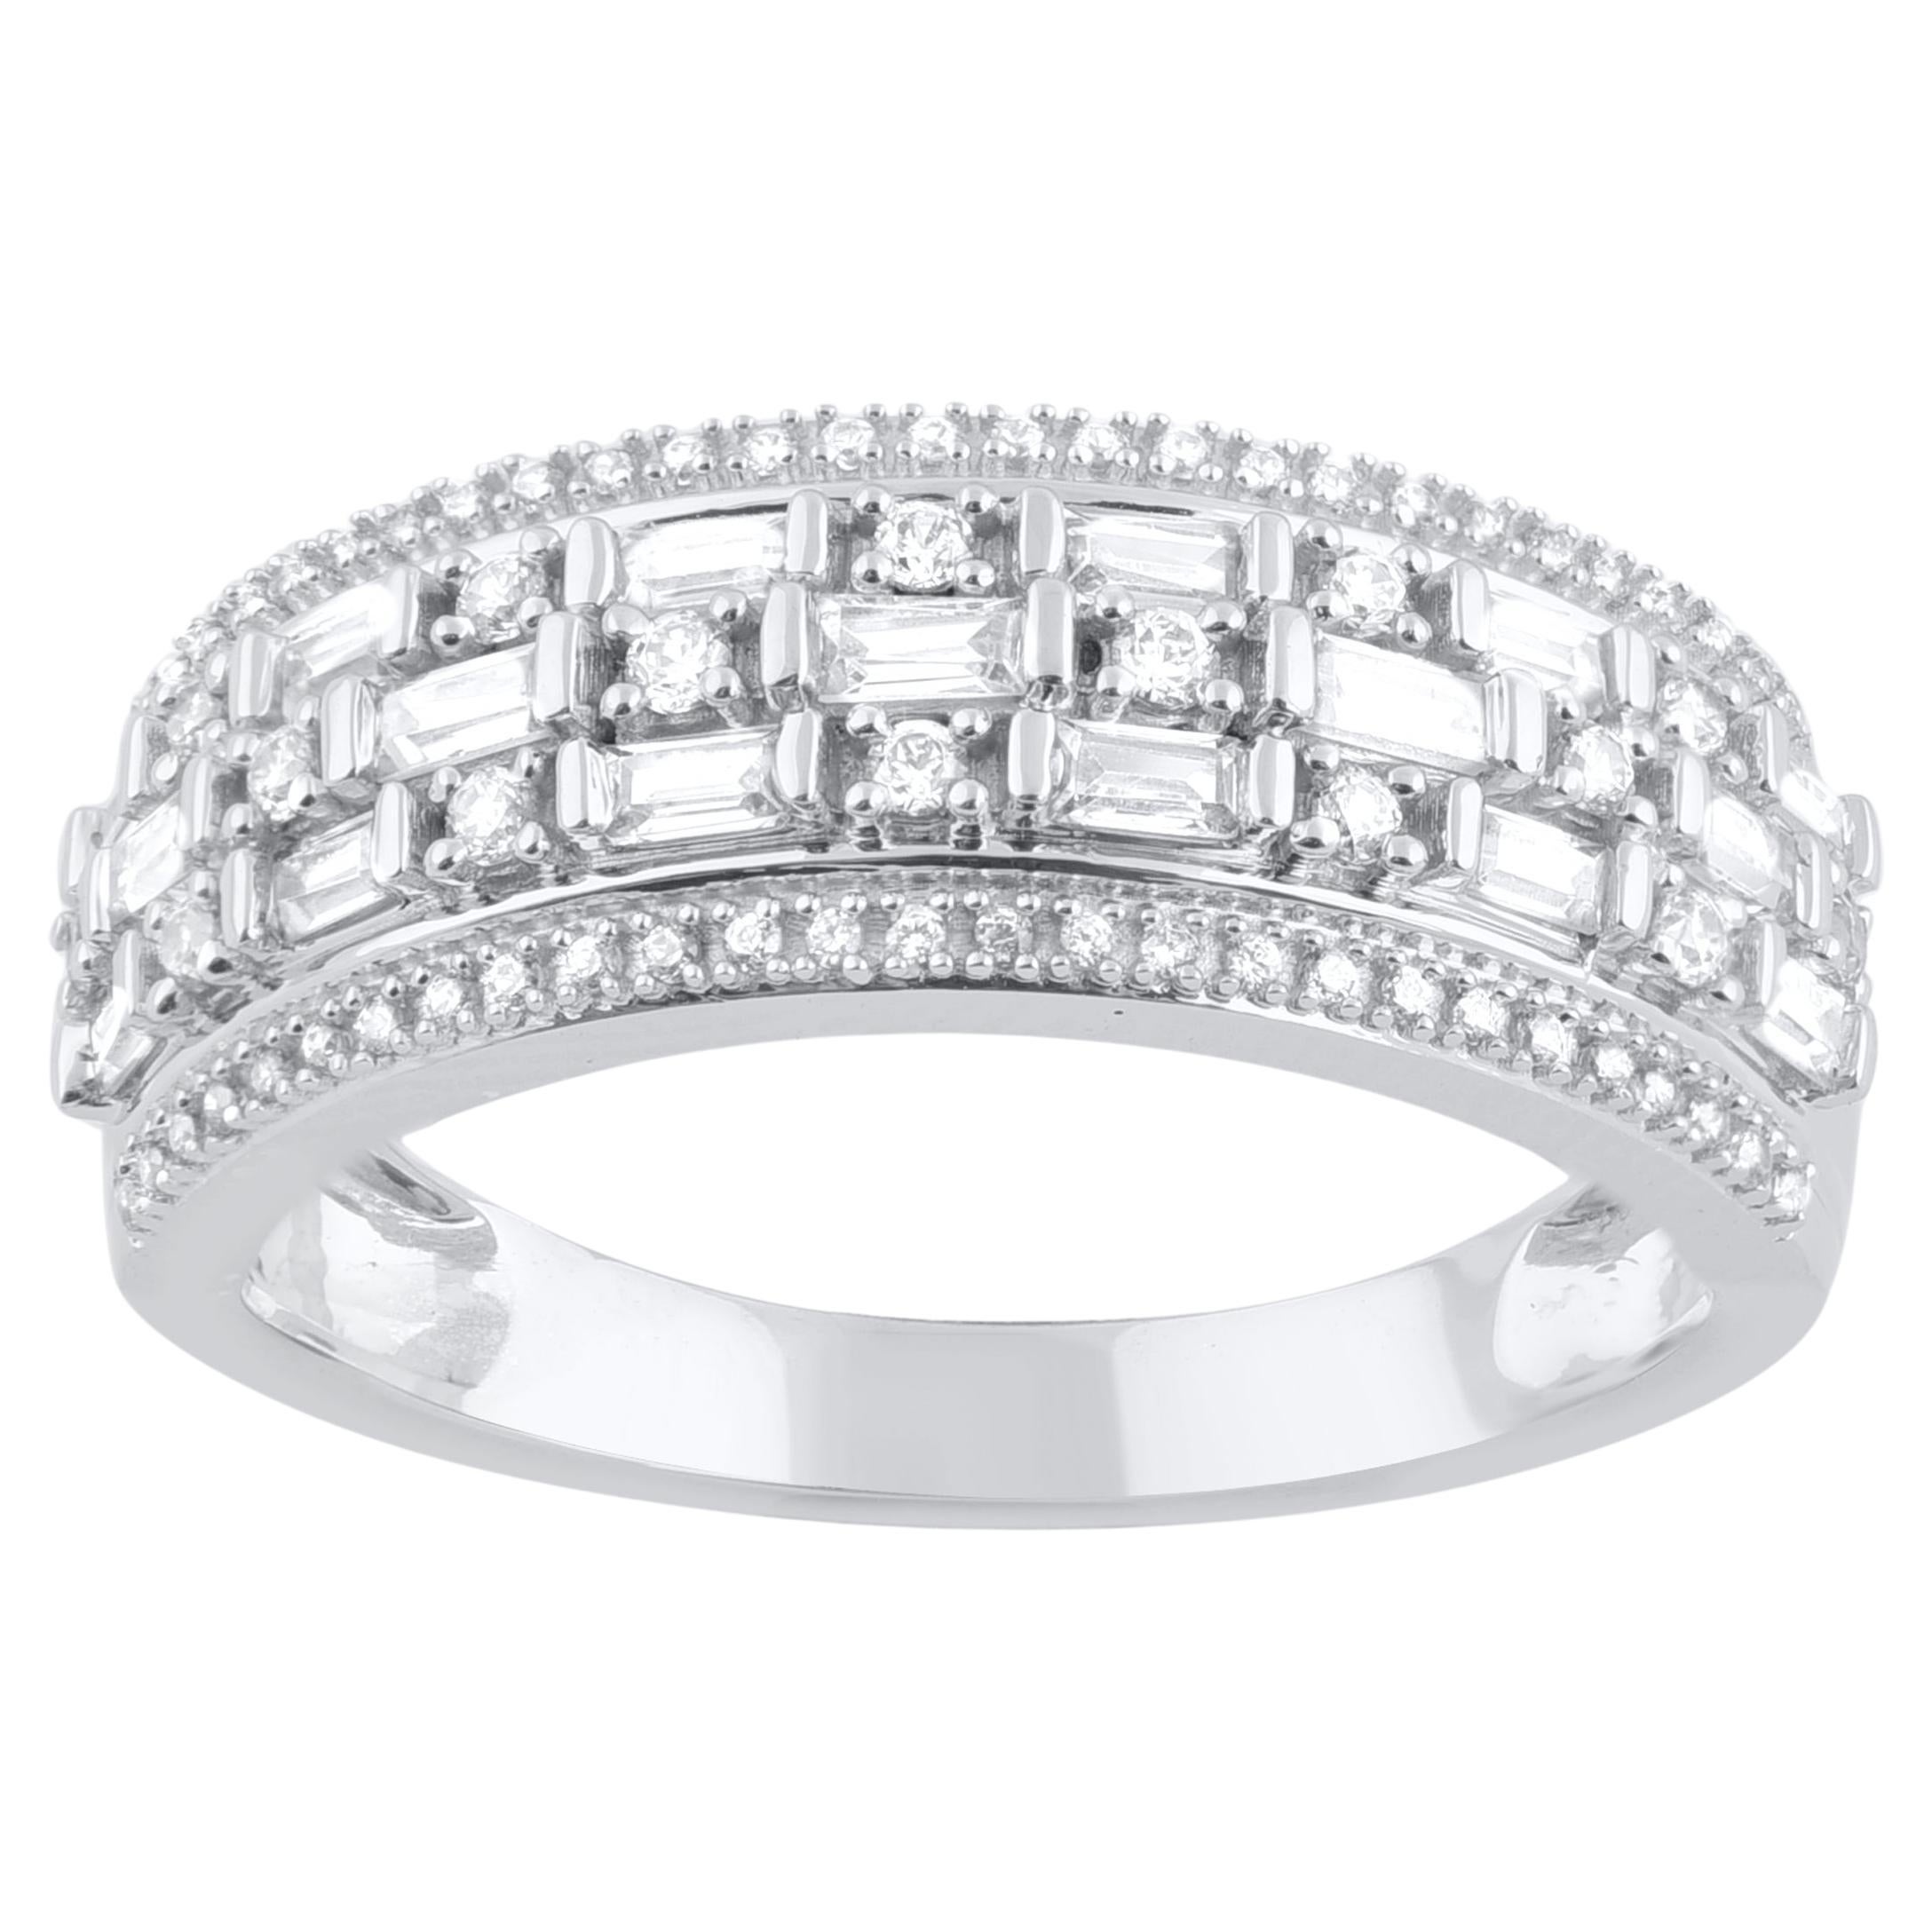 TJD 0.50 Carat Natural Diamond Wedding Band Ring in 18 Karat White Gold For Sale